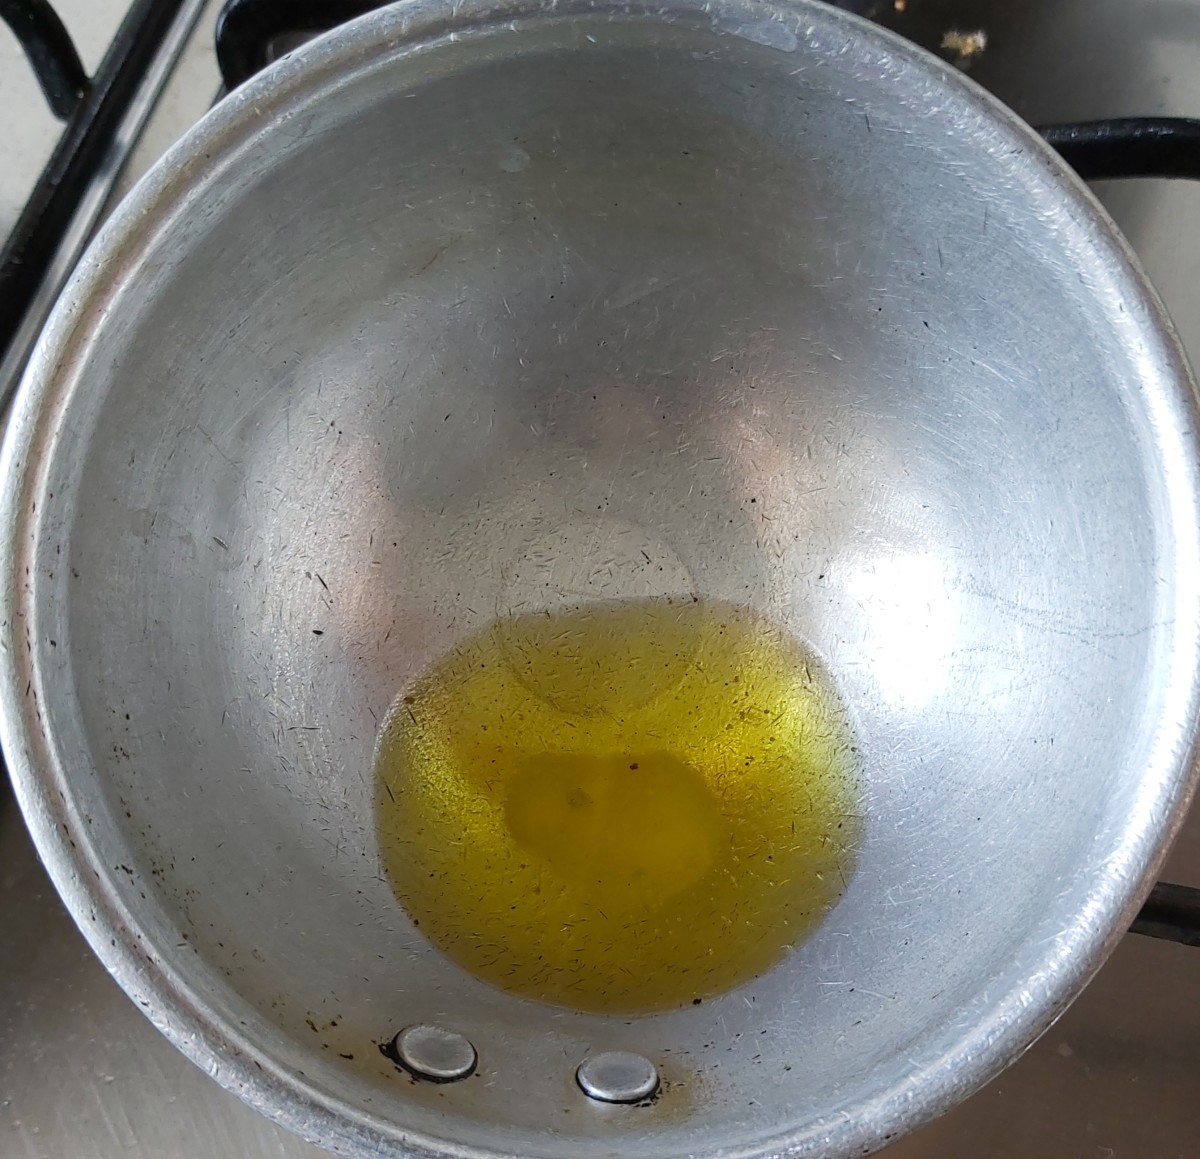 In a pan, heat 1-2 teaspoons of ghee.